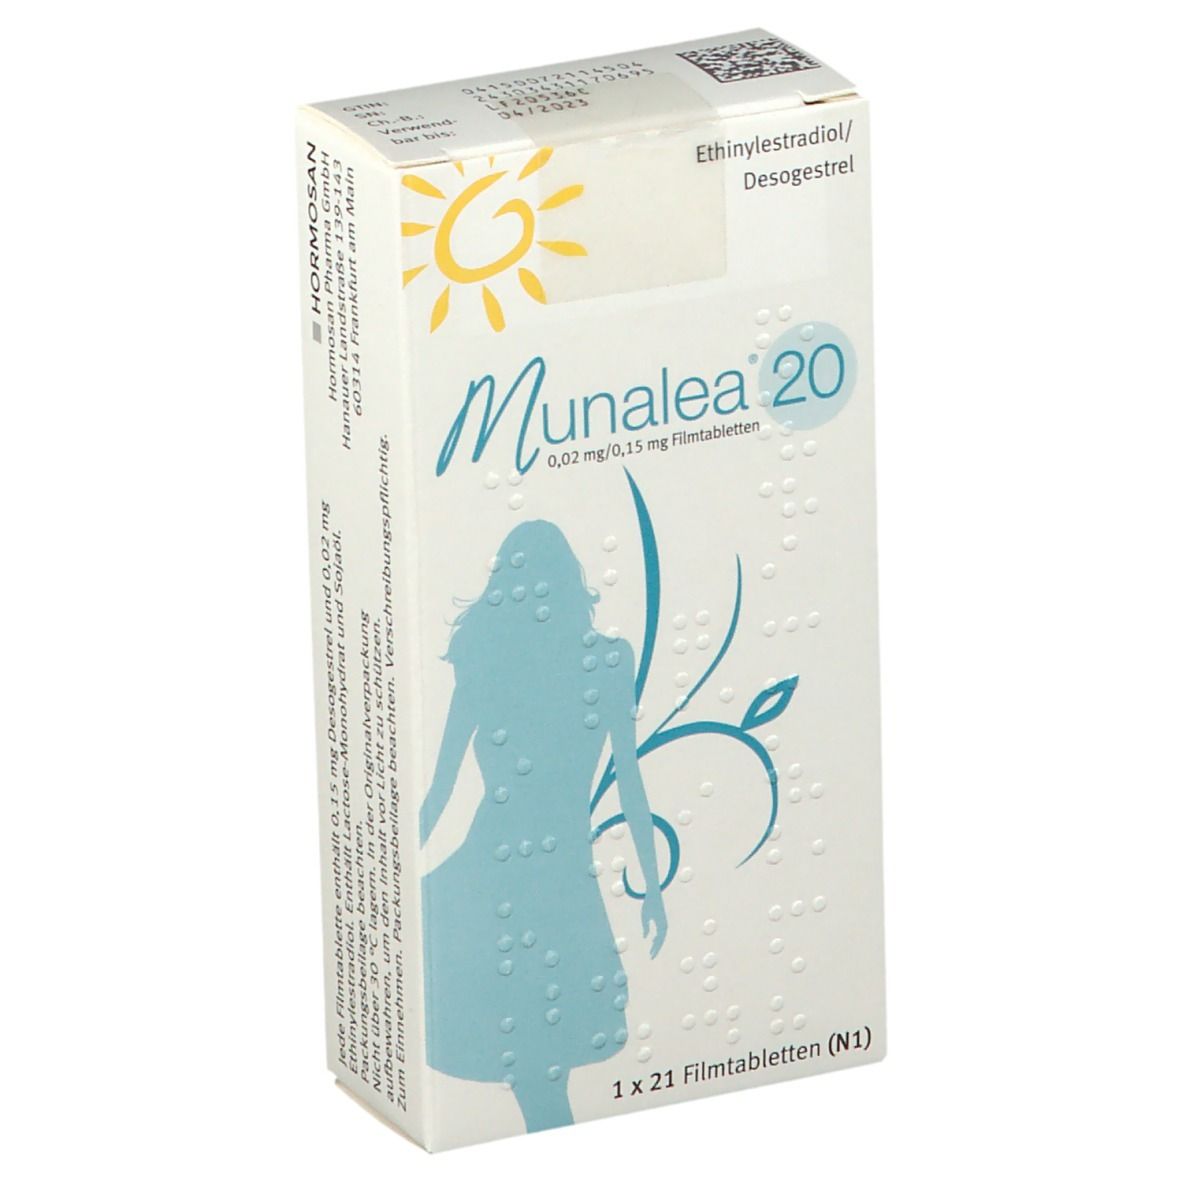 Munalea® 20